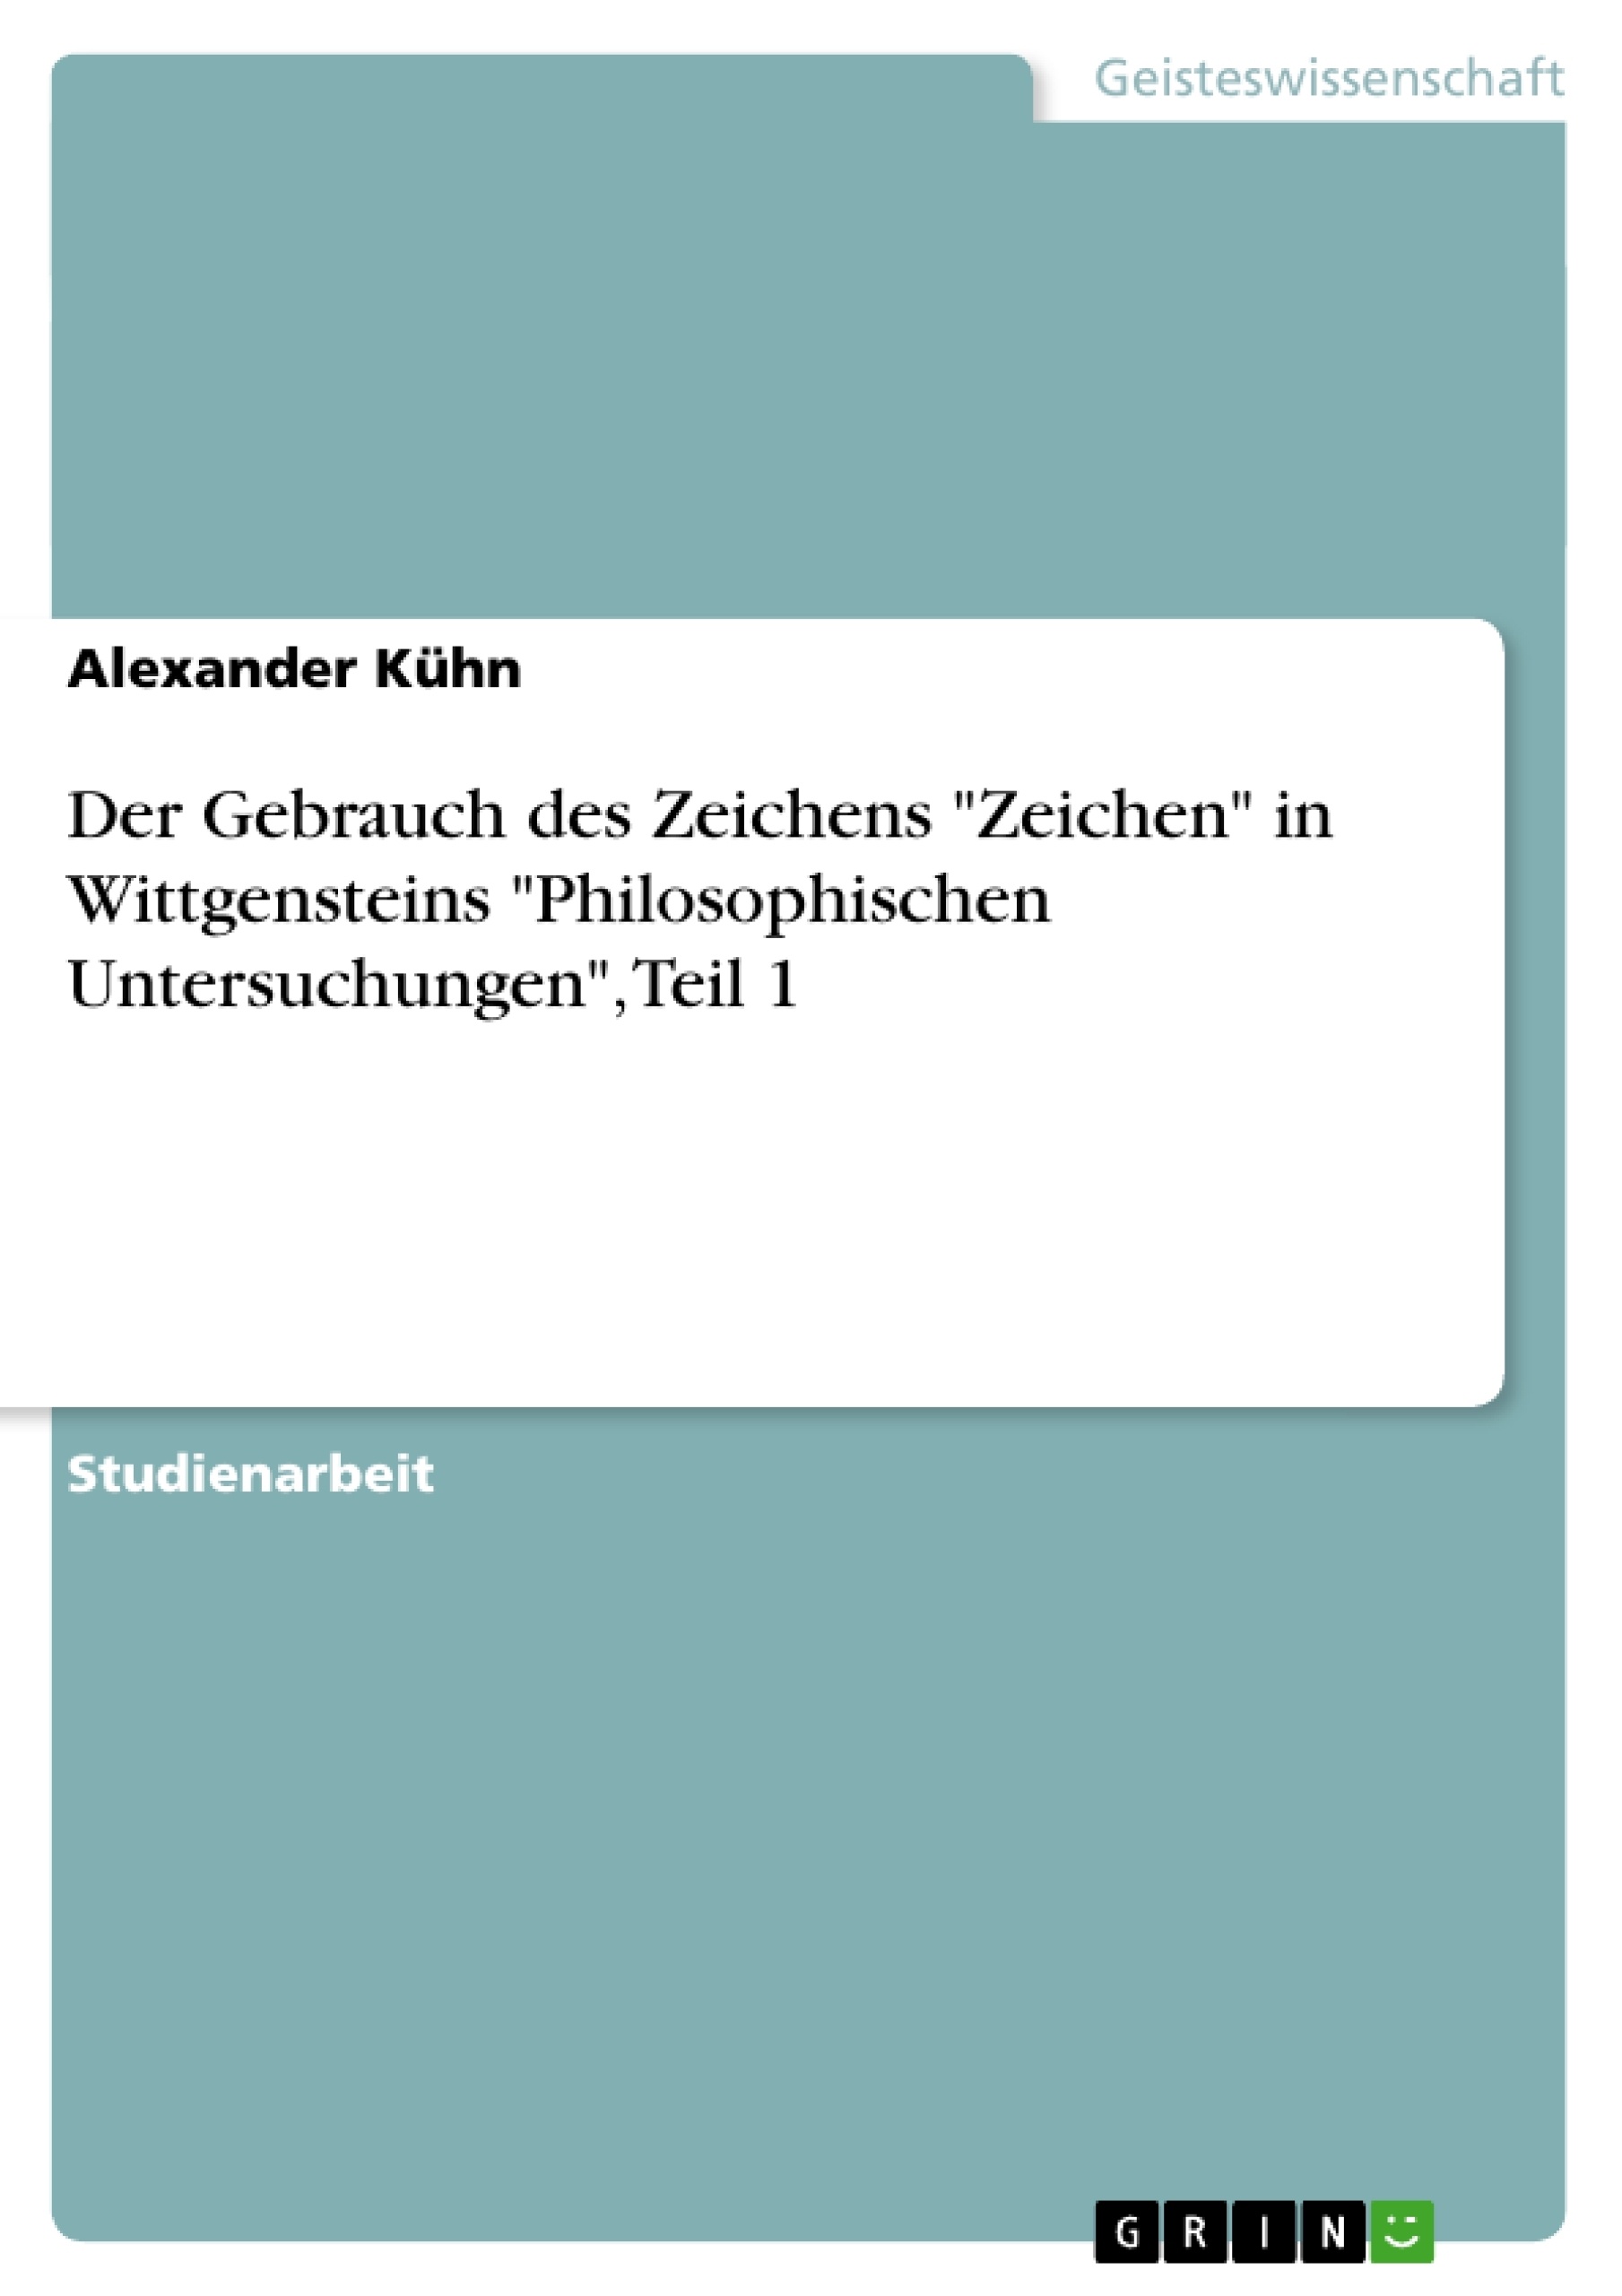 Título: Der Gebrauch des Zeichens "Zeichen" in Wittgensteins "Philosophischen Untersuchungen", Teil 1